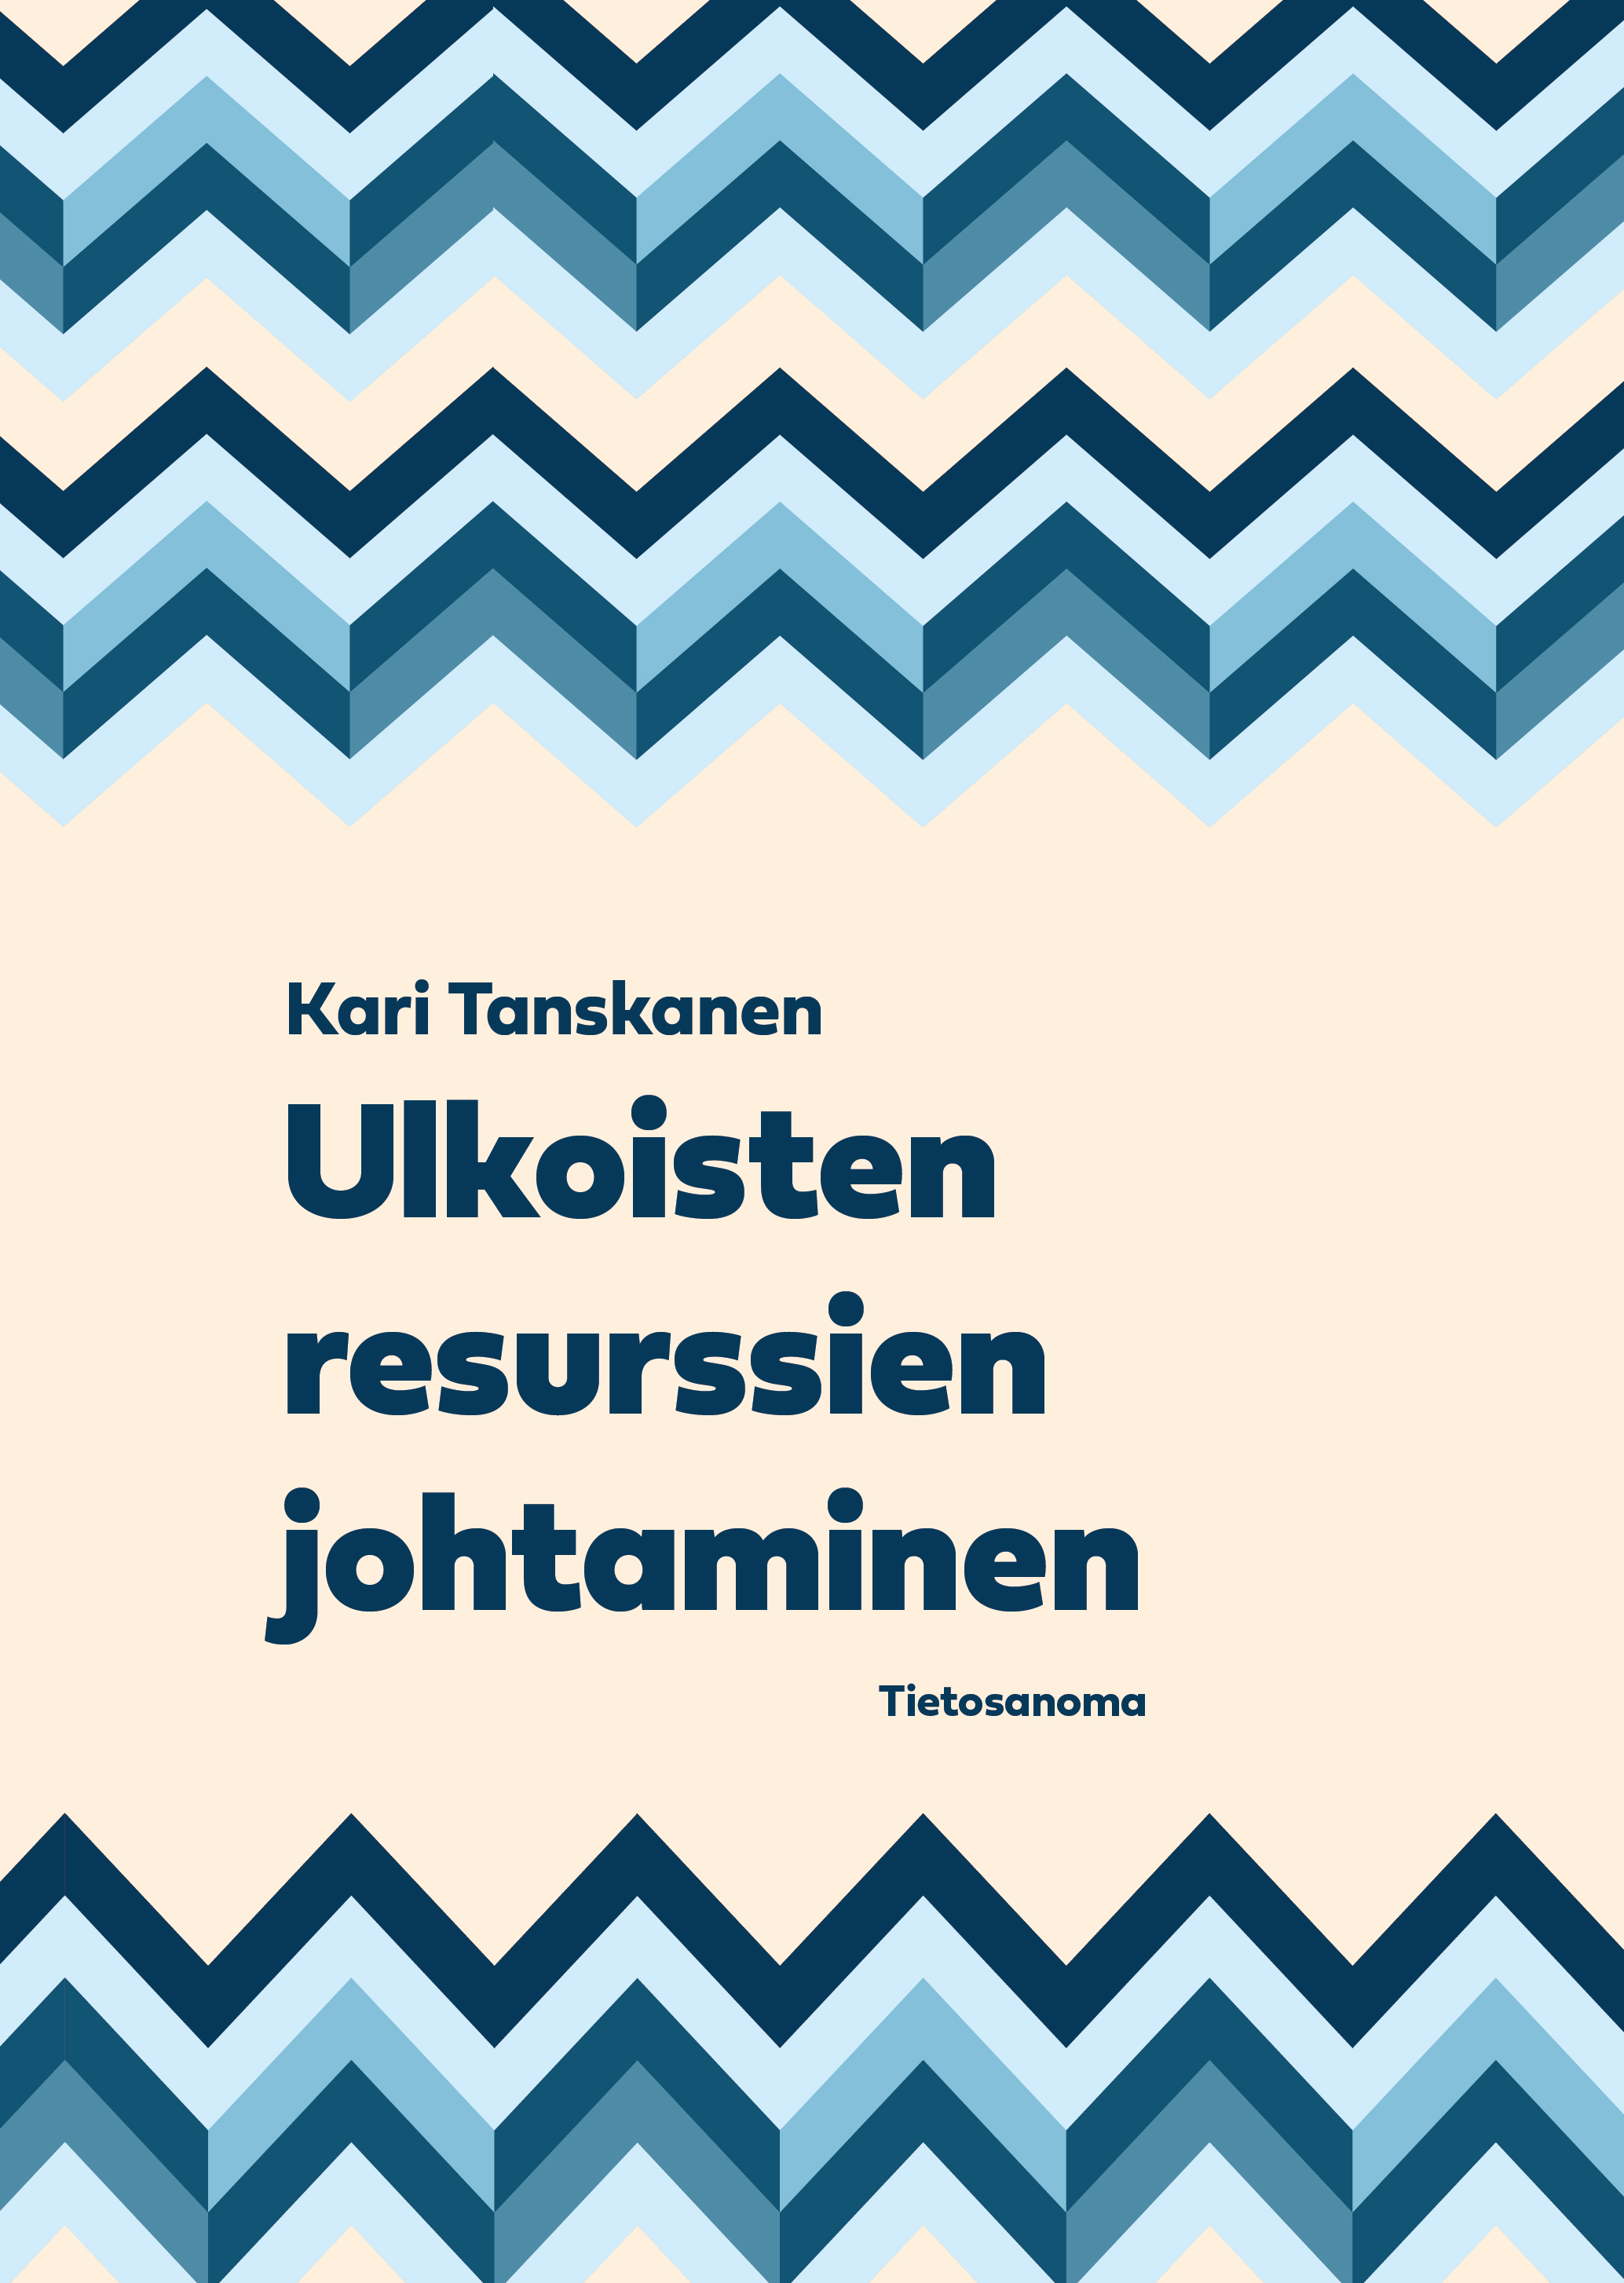 Tanskanen, Kari - Ulkoisten resurssien johtaminen, ebook